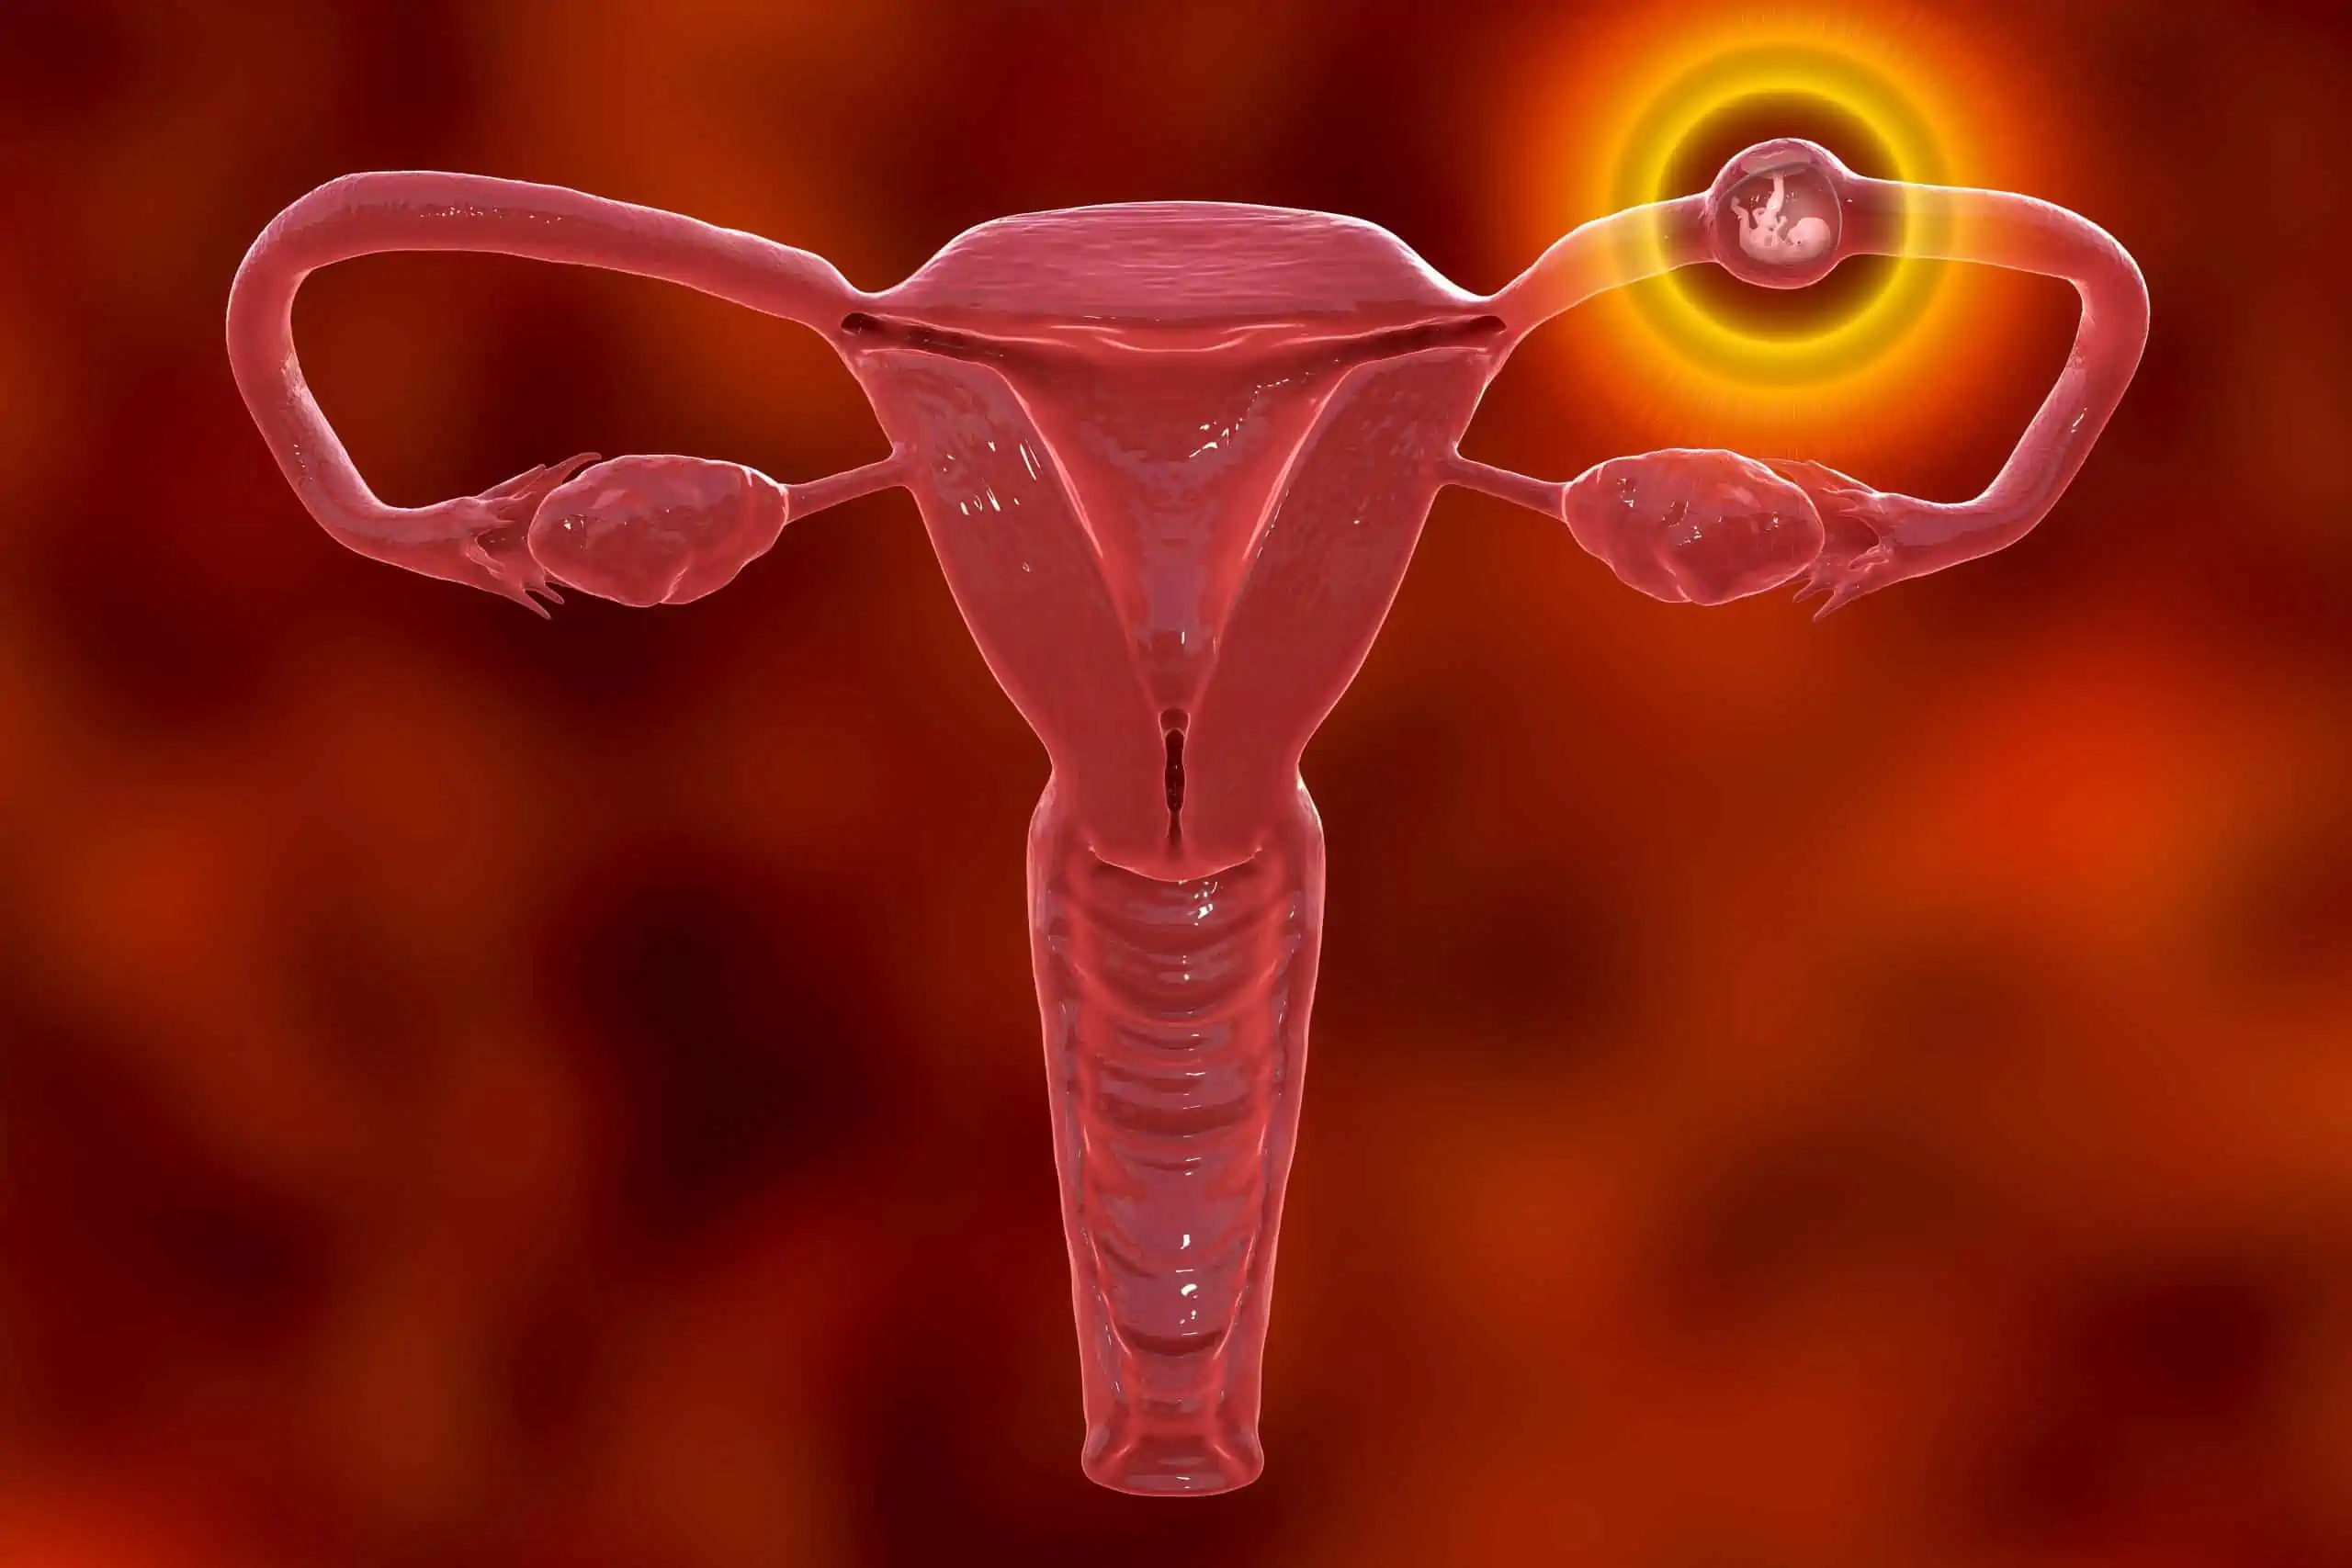 izvanmaternična trudnoća - što je i kako do nje dolazi